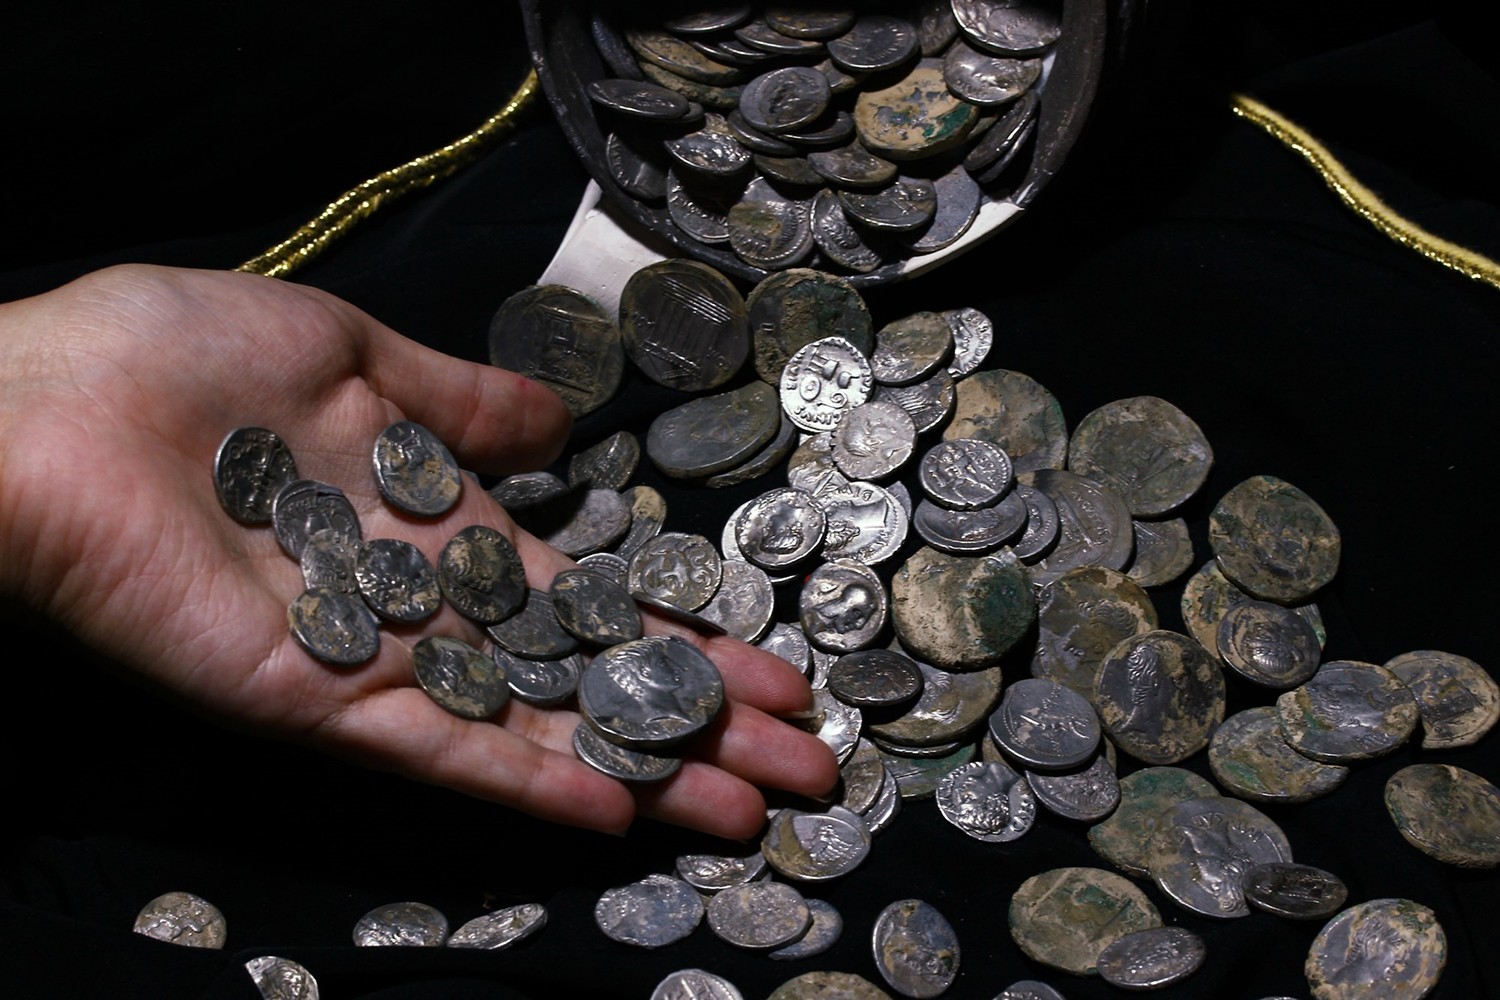 Aizanoi Antik Kenti'nde özel bir sikke koleksiyonu bulundu